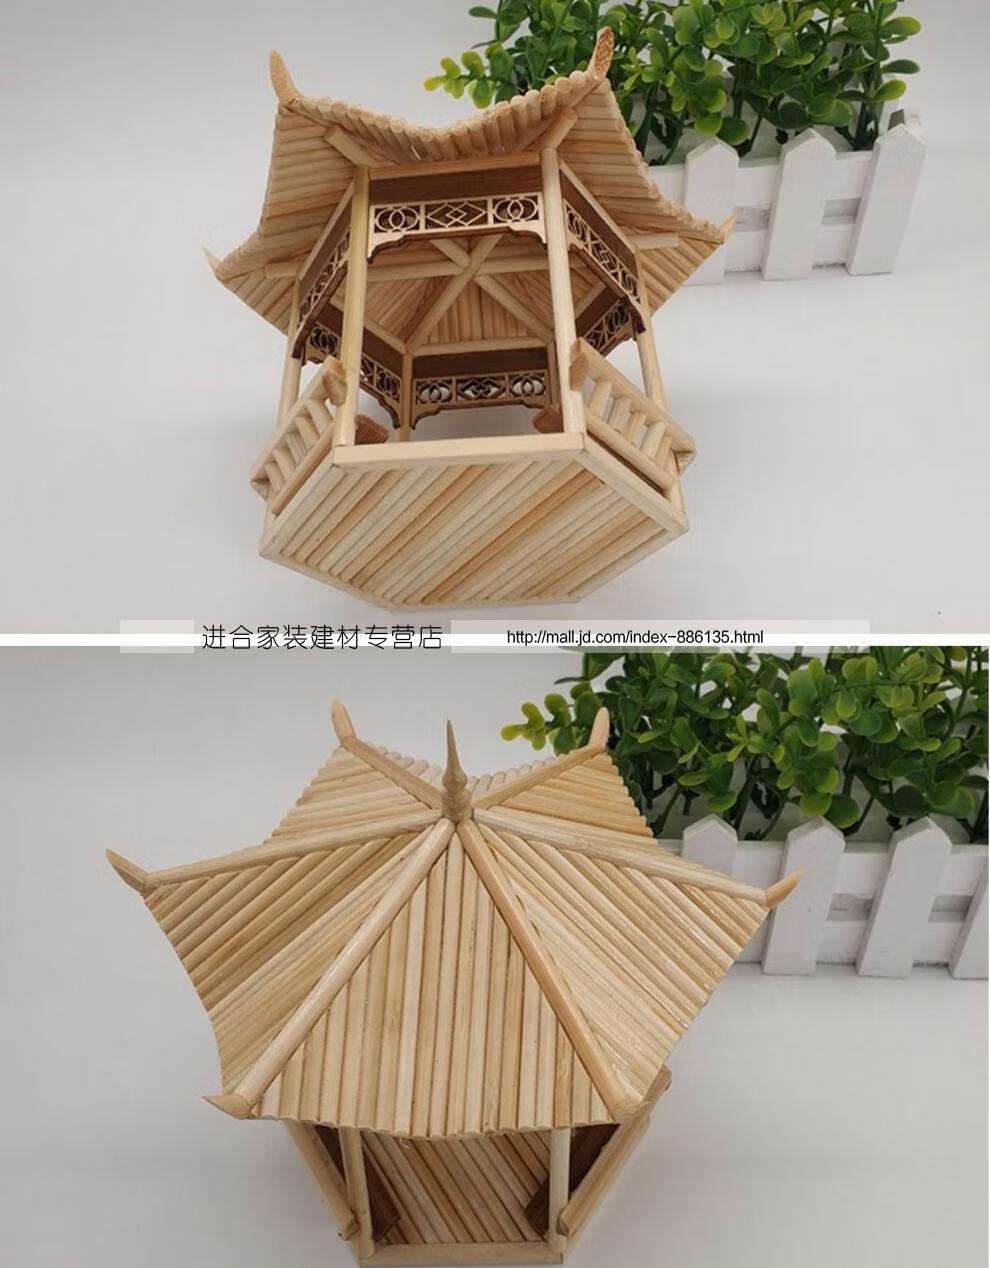 竹签一次性筷子diy纯手工制作竹艺小凉亭创意建筑模型手工成品材料包